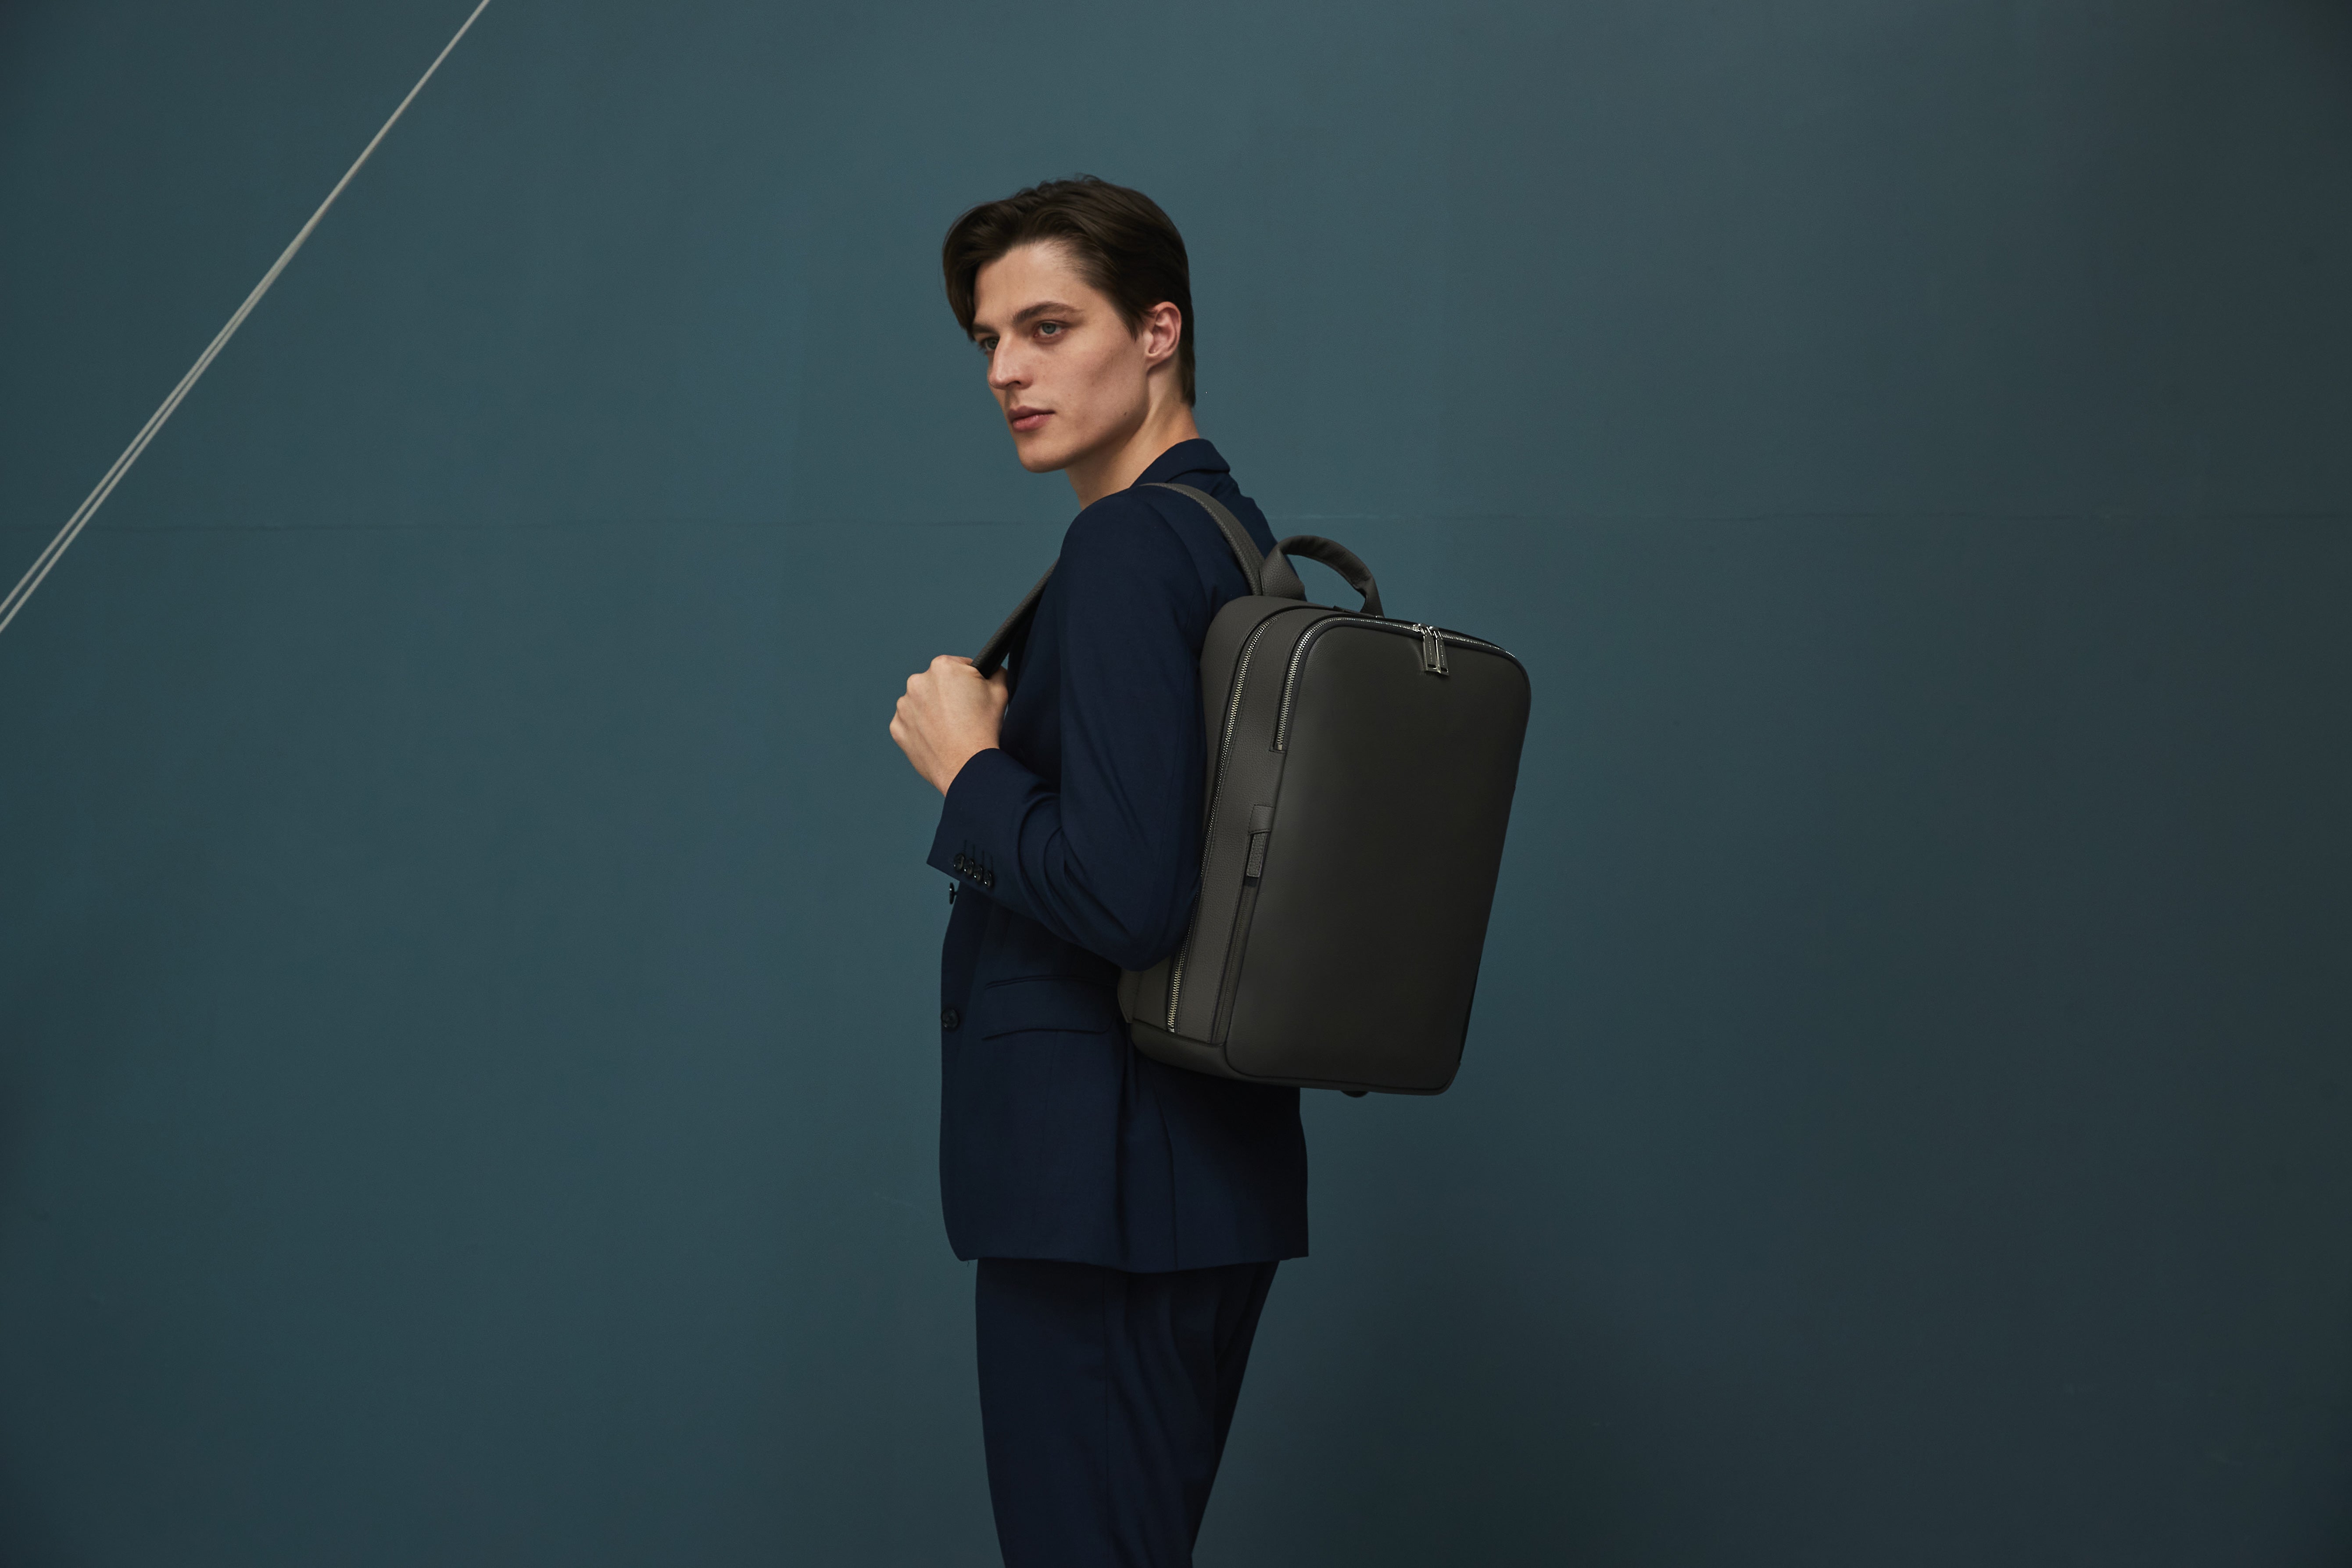 Moderní podnikatel se stylovým batohem David od společnosti BONAVENTURA pro každodenní kancelářský život